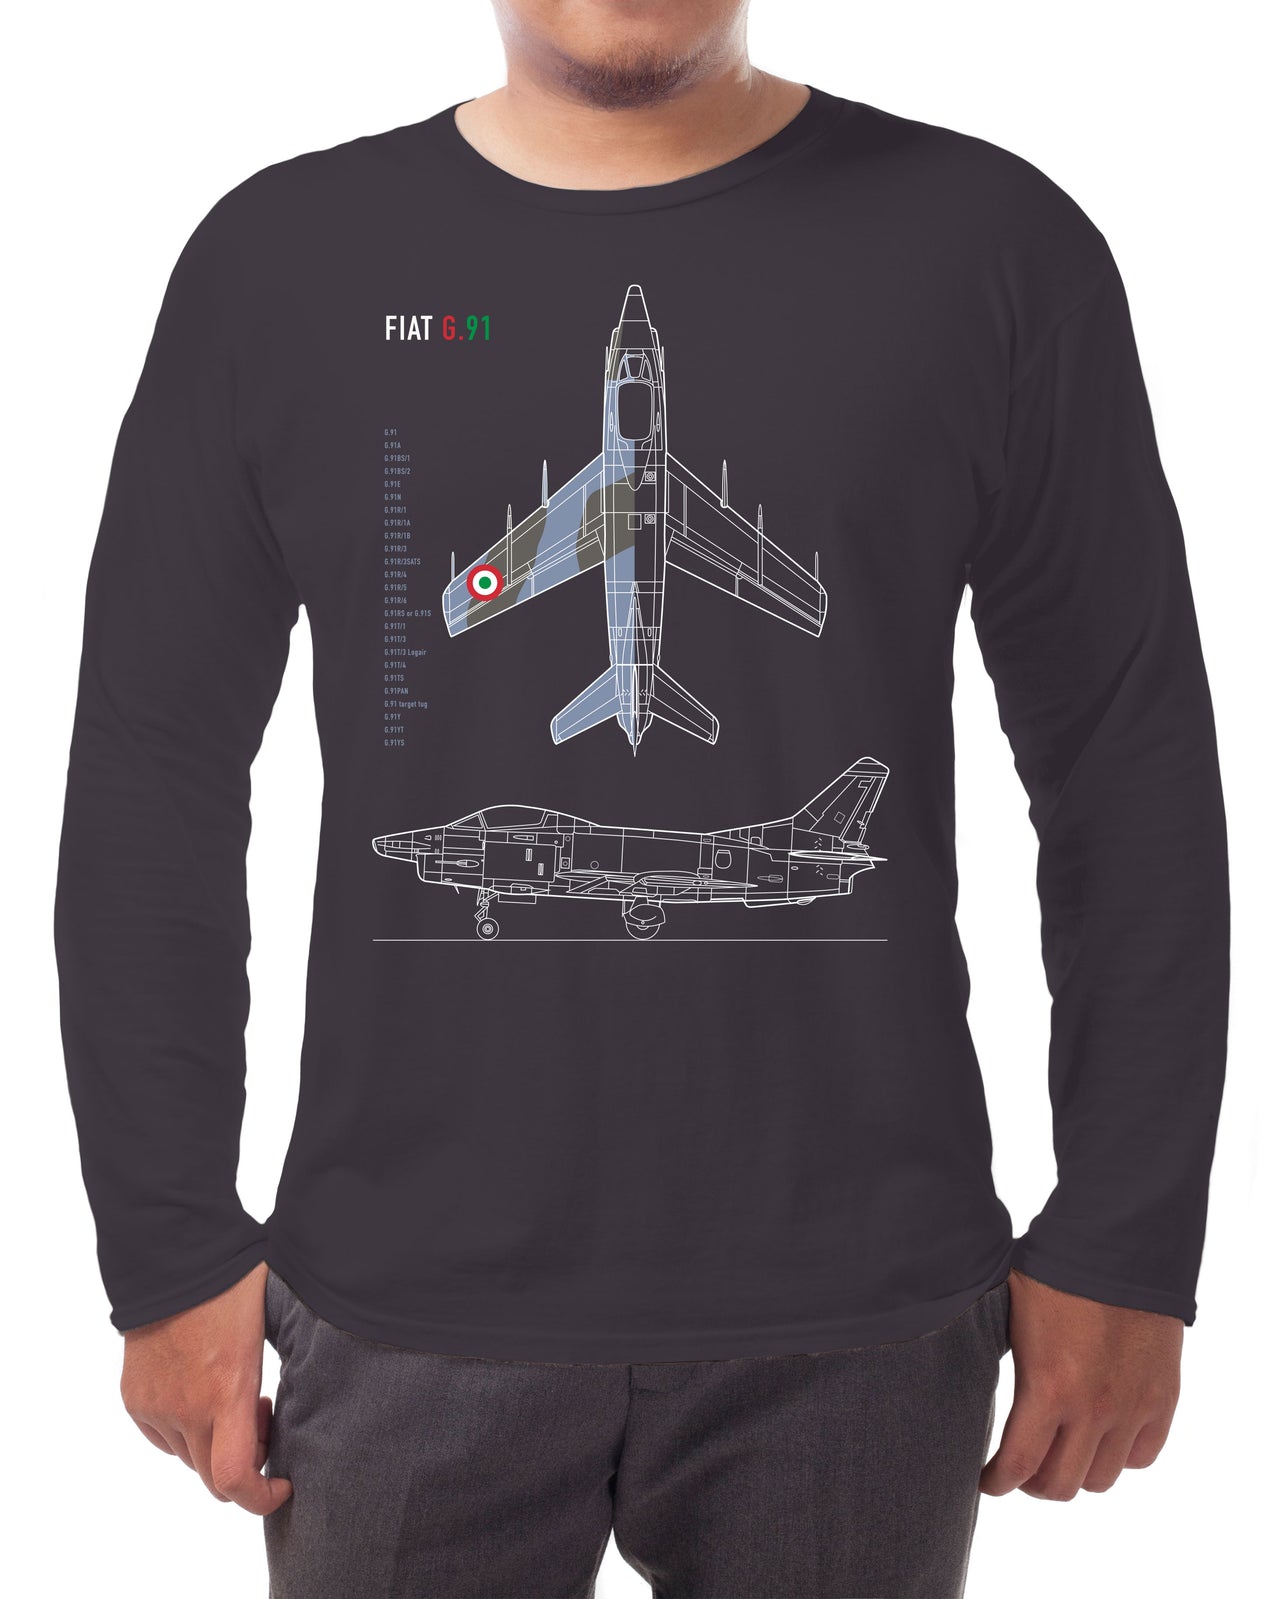 Fiat G.91 - Long-sleeve T-shirt